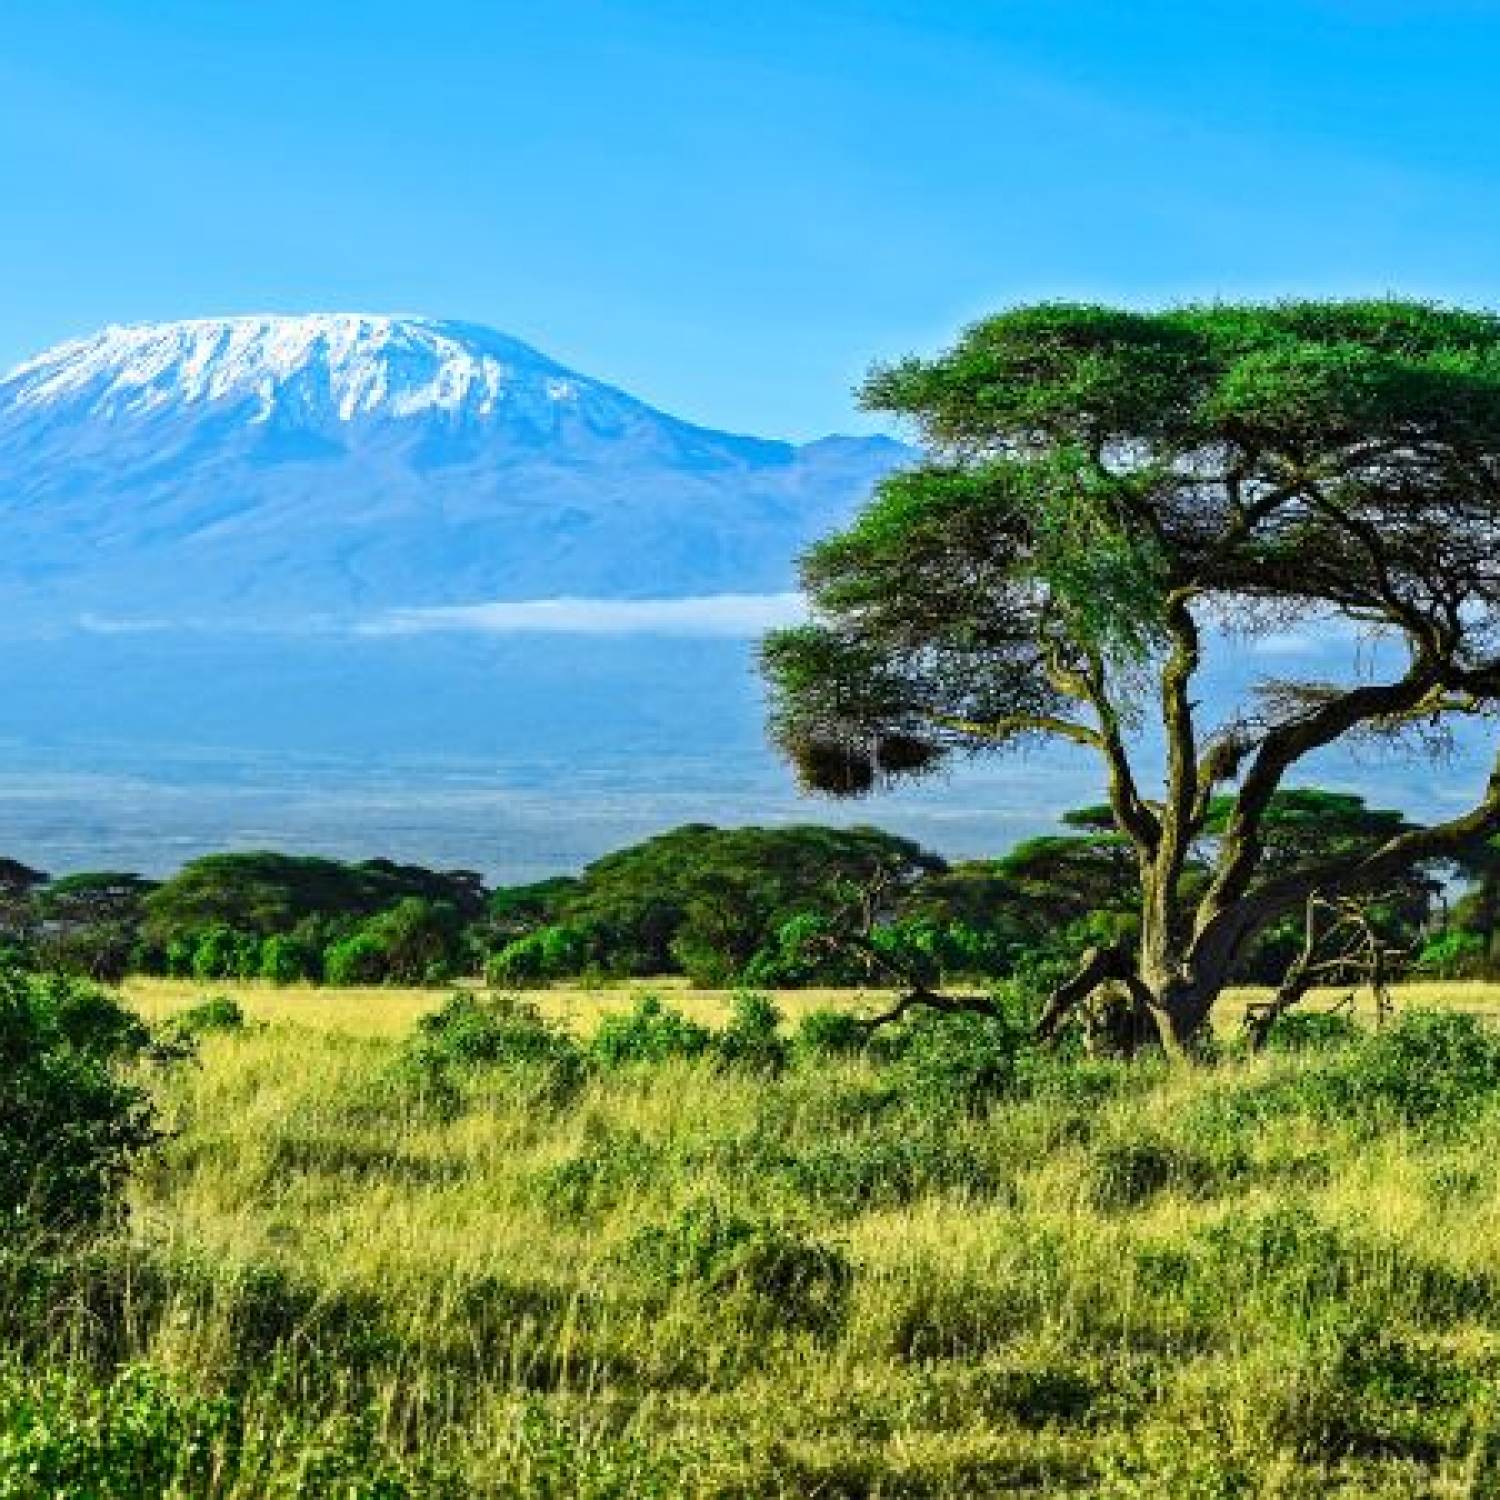 Jak zdobyć Kilimandżaro: Szczegółowy przewodnik po tym, jak wspiąć się na najwyższą górę Afryki